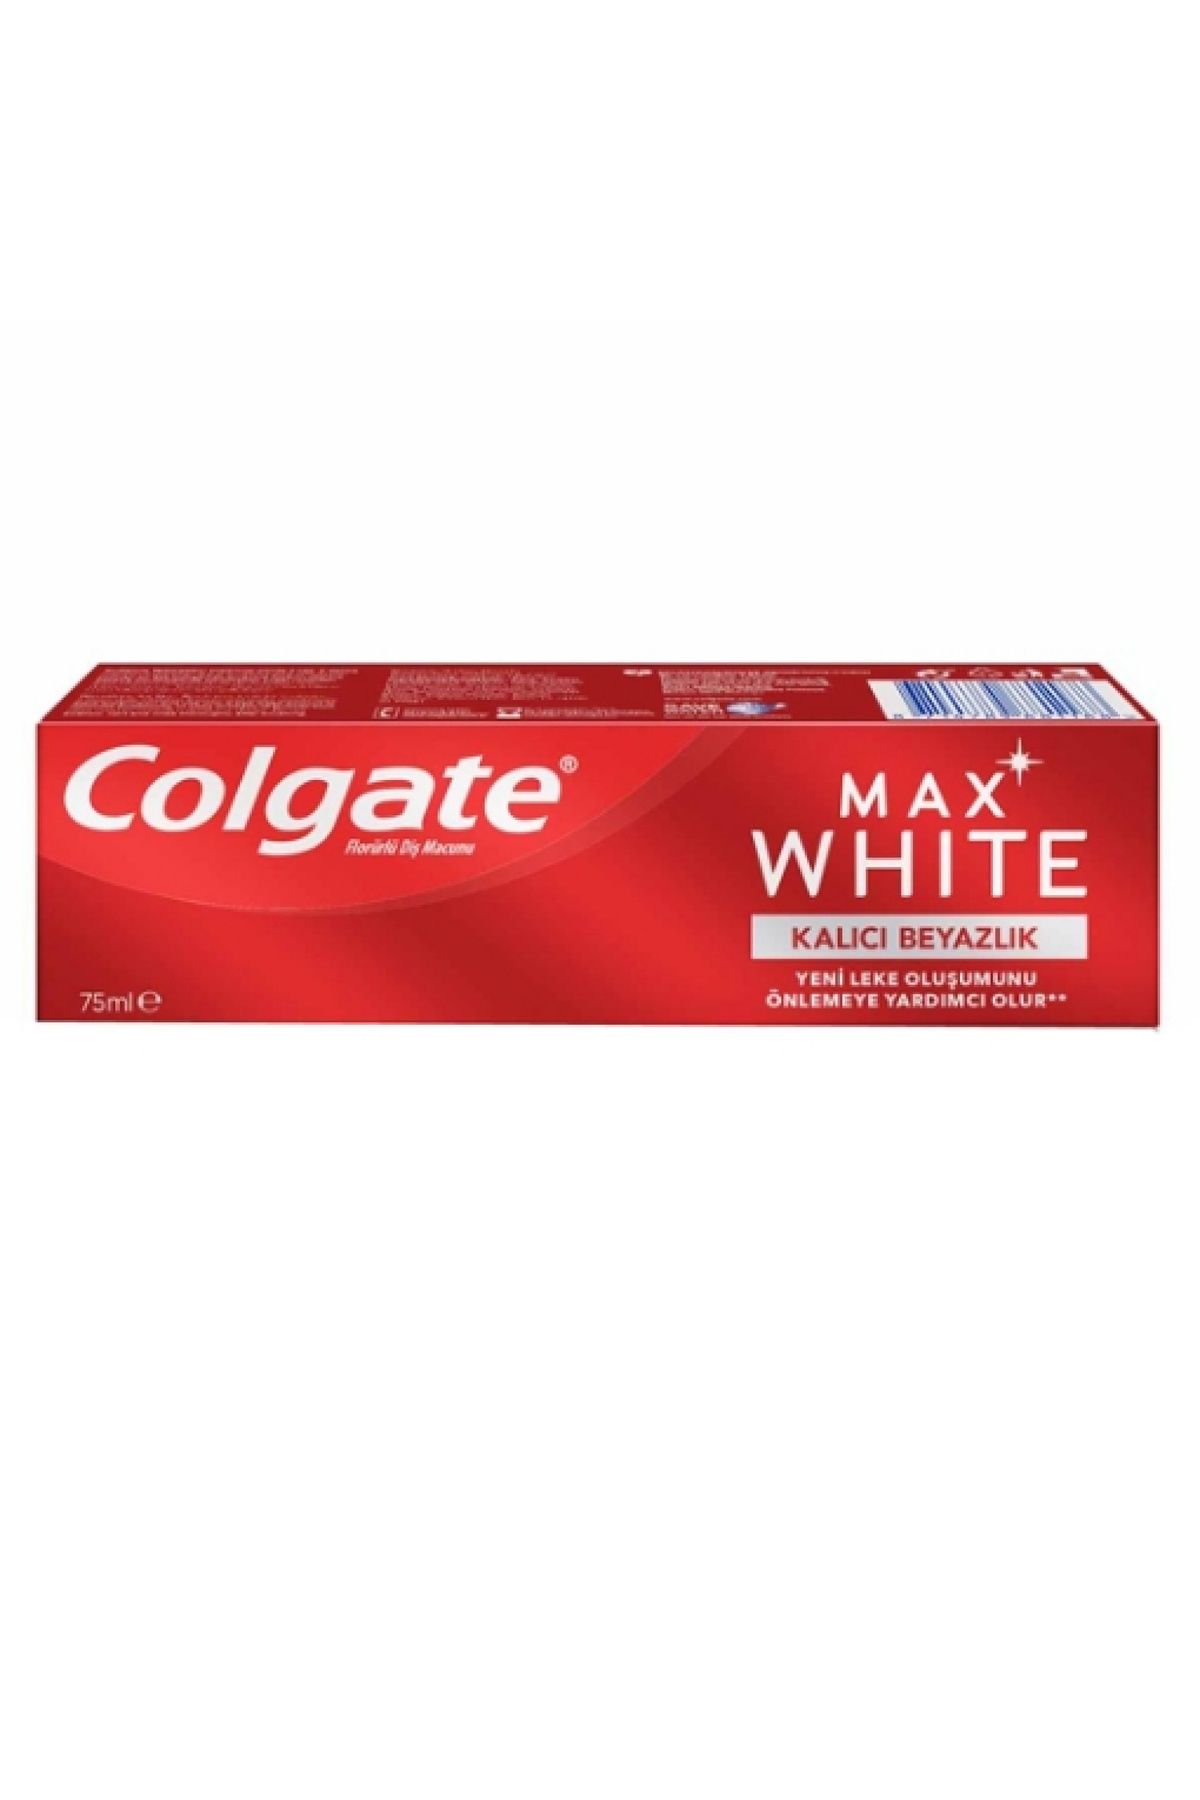 Colgate Max White Kalıcı Beyazlık 75 ml.